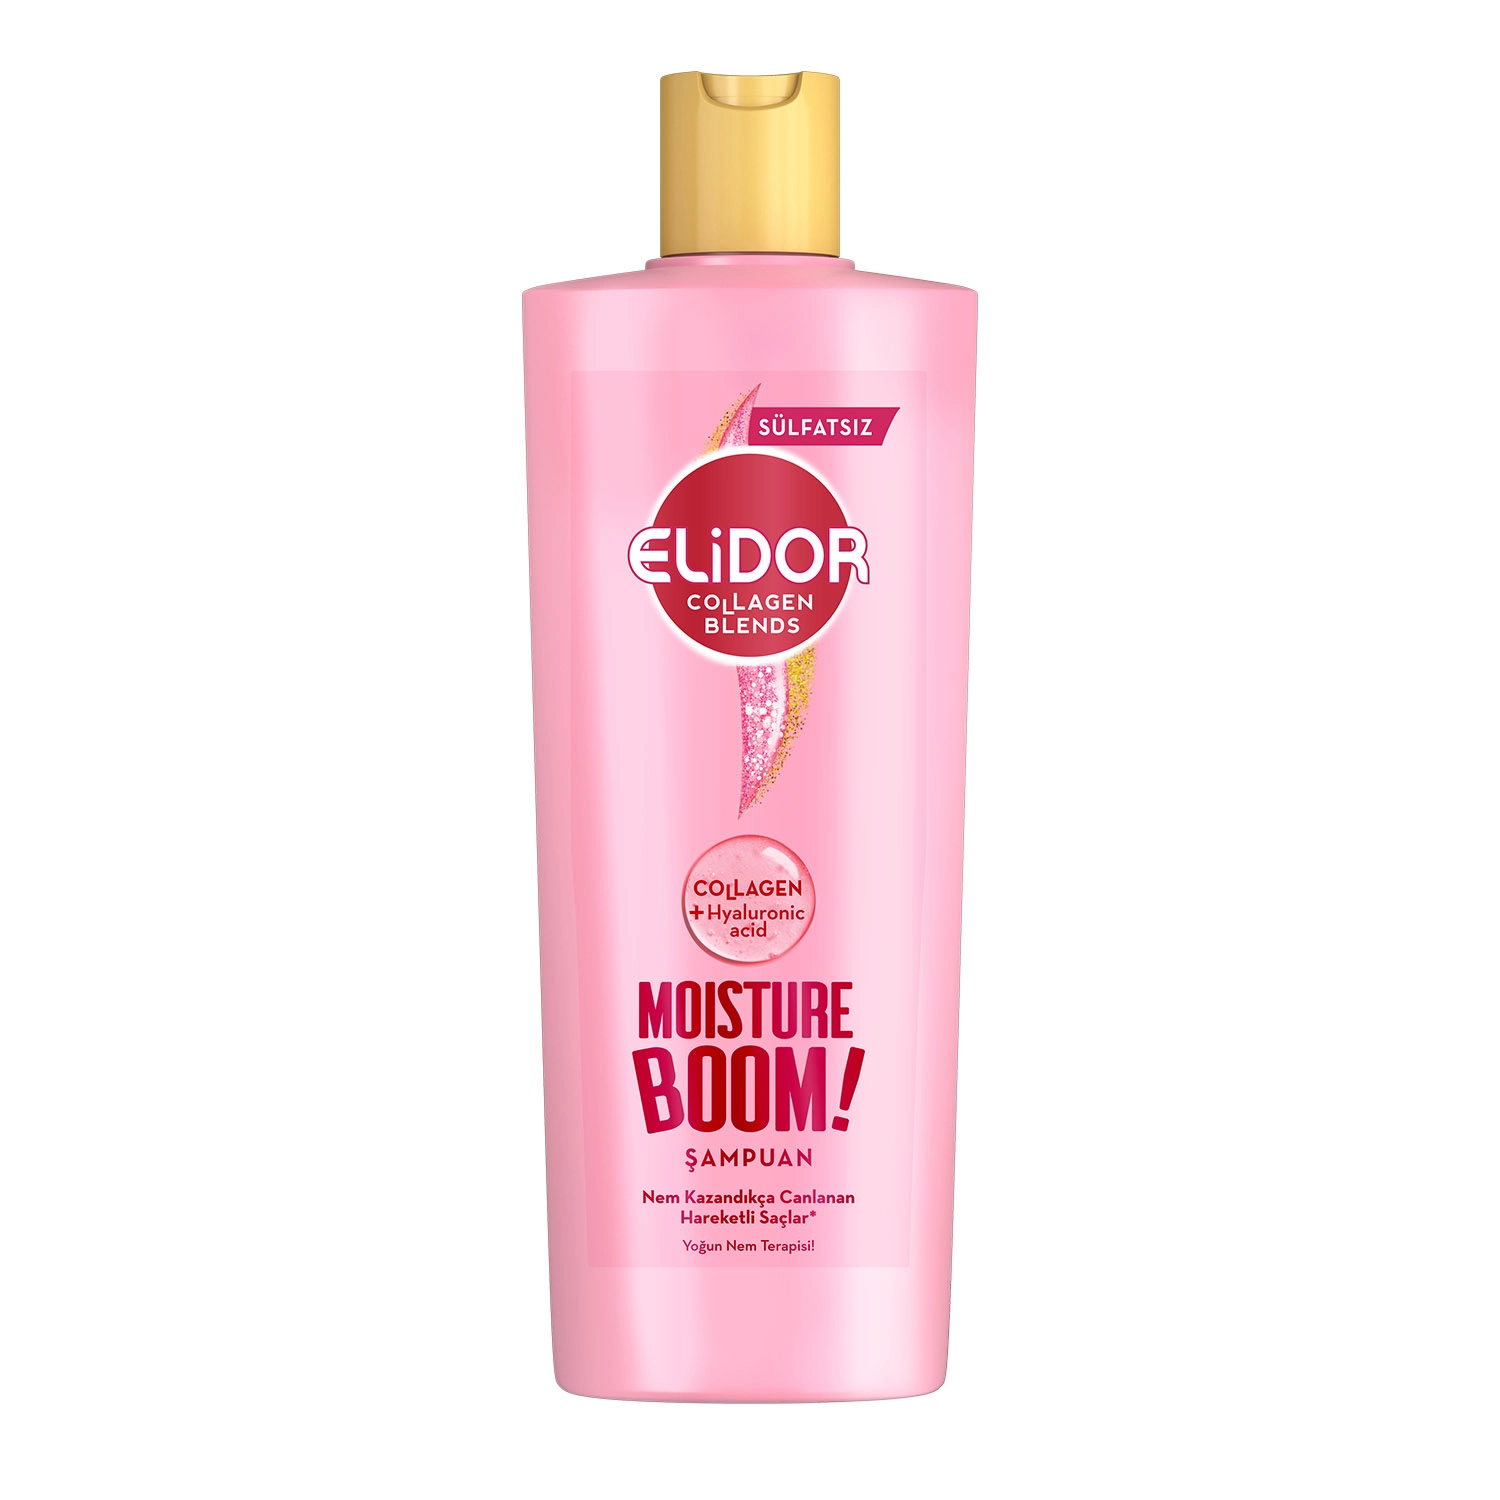 Elidor Collagen Blends Sülfatsız Saç Bakım Şampuanı Moisture Boom Yoğun Nem Terapisi 350 ml - Saç Bakım Güzellik